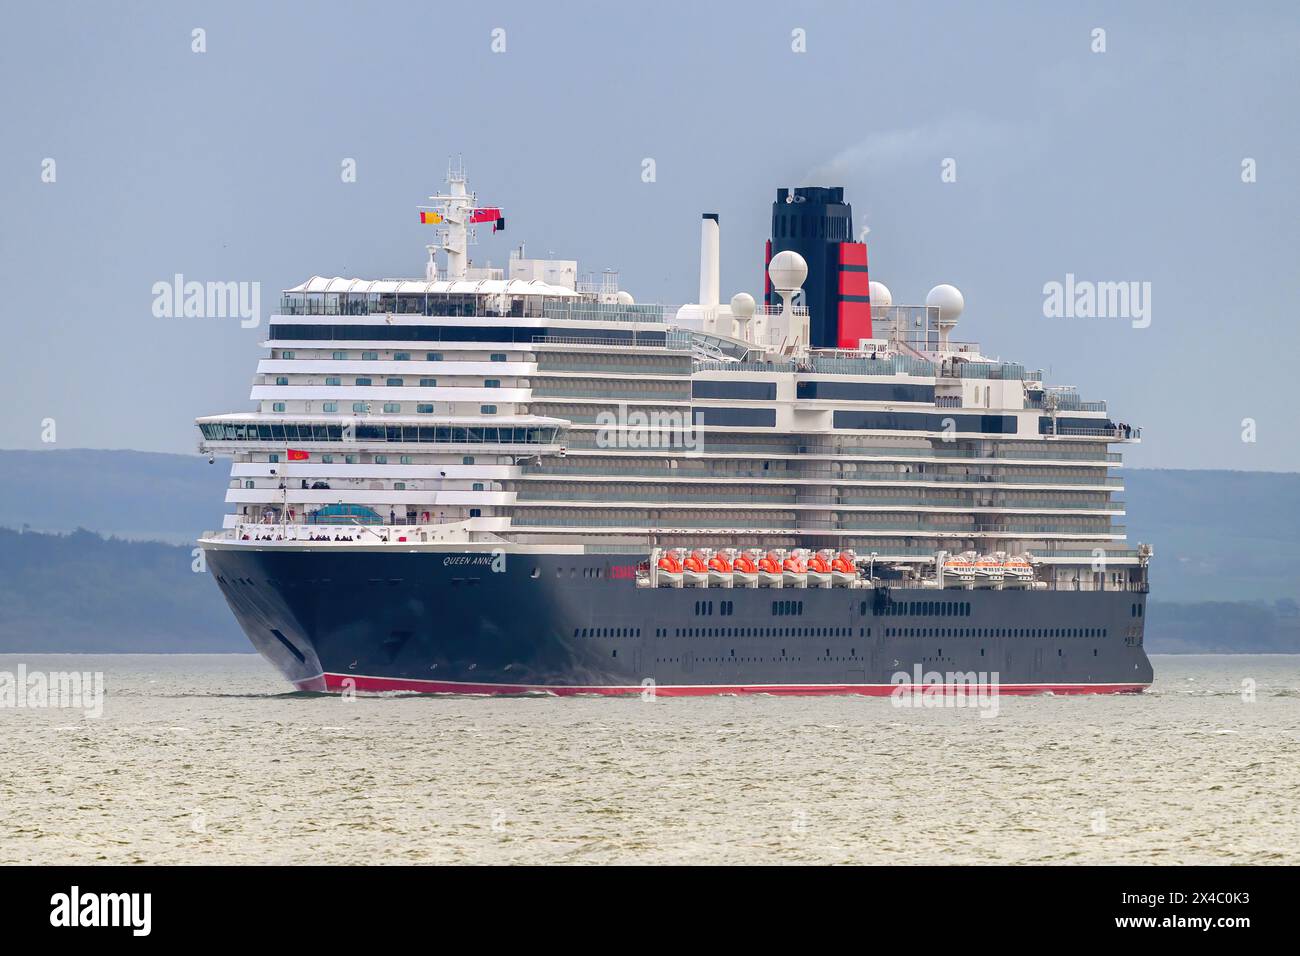 Première arrivée au Royaume-Uni du Queen Anne, un navire de croisière de classe Pinnacle exploité par Cunard Line, qui fait partie de la Carnival Corporation le 30 avril 2024. Banque D'Images